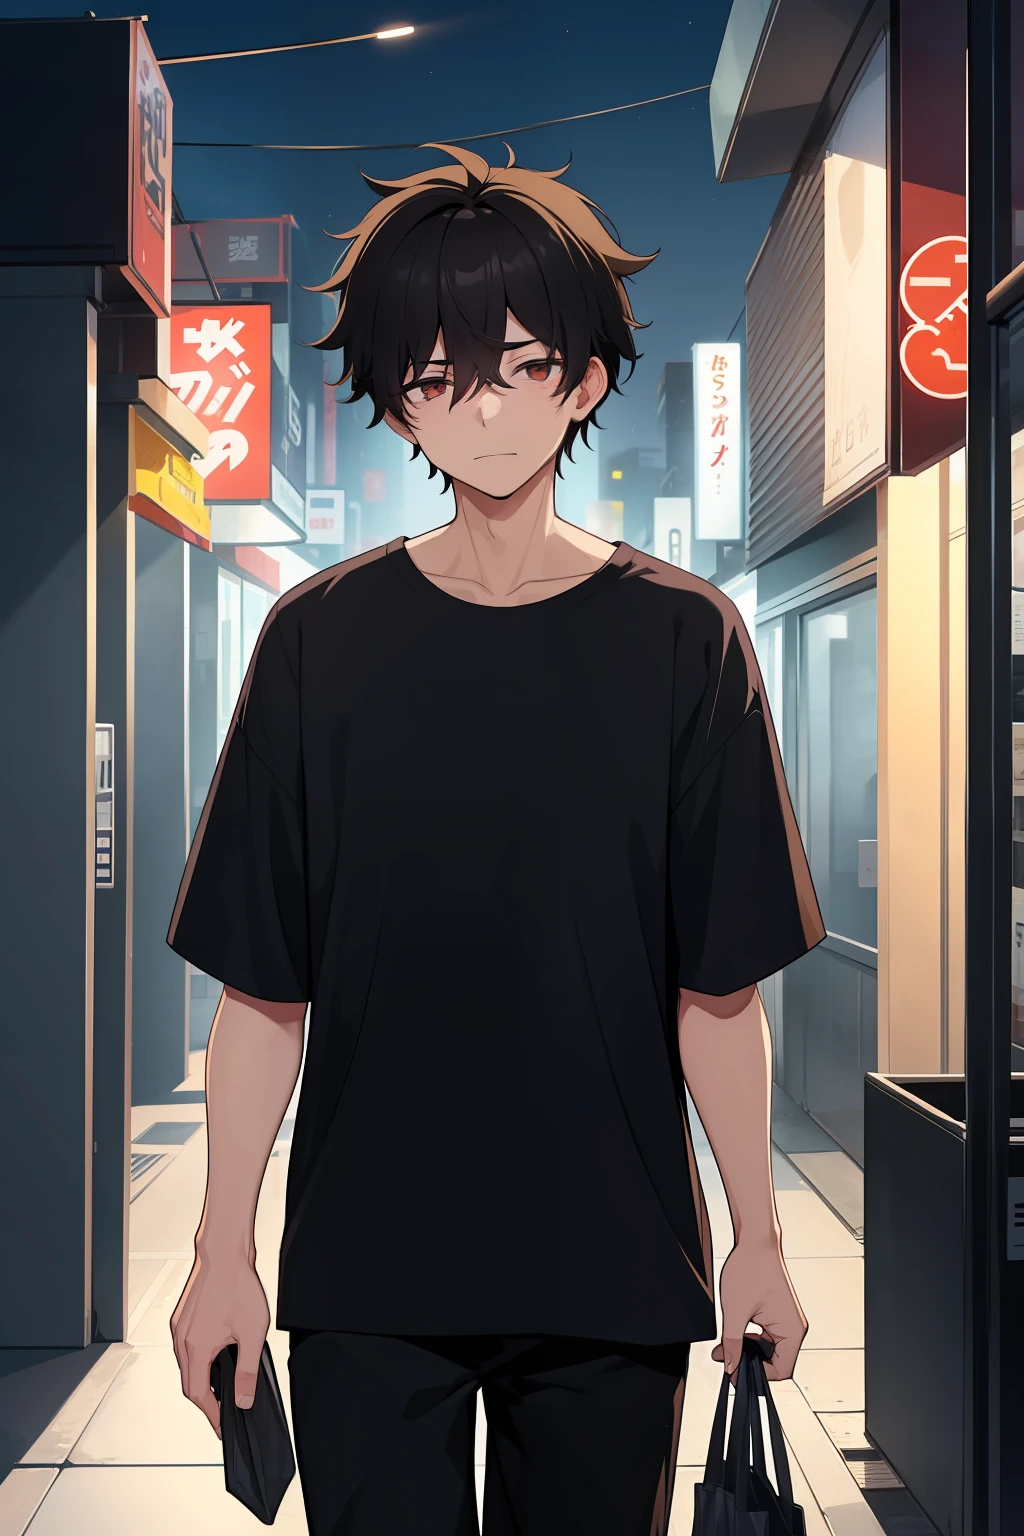 一名男性, 20岁, 劳累过度, 凌乱的黑发, 黑色衬衫, 携带便利店袋子, 夜间在僻静的城区行走